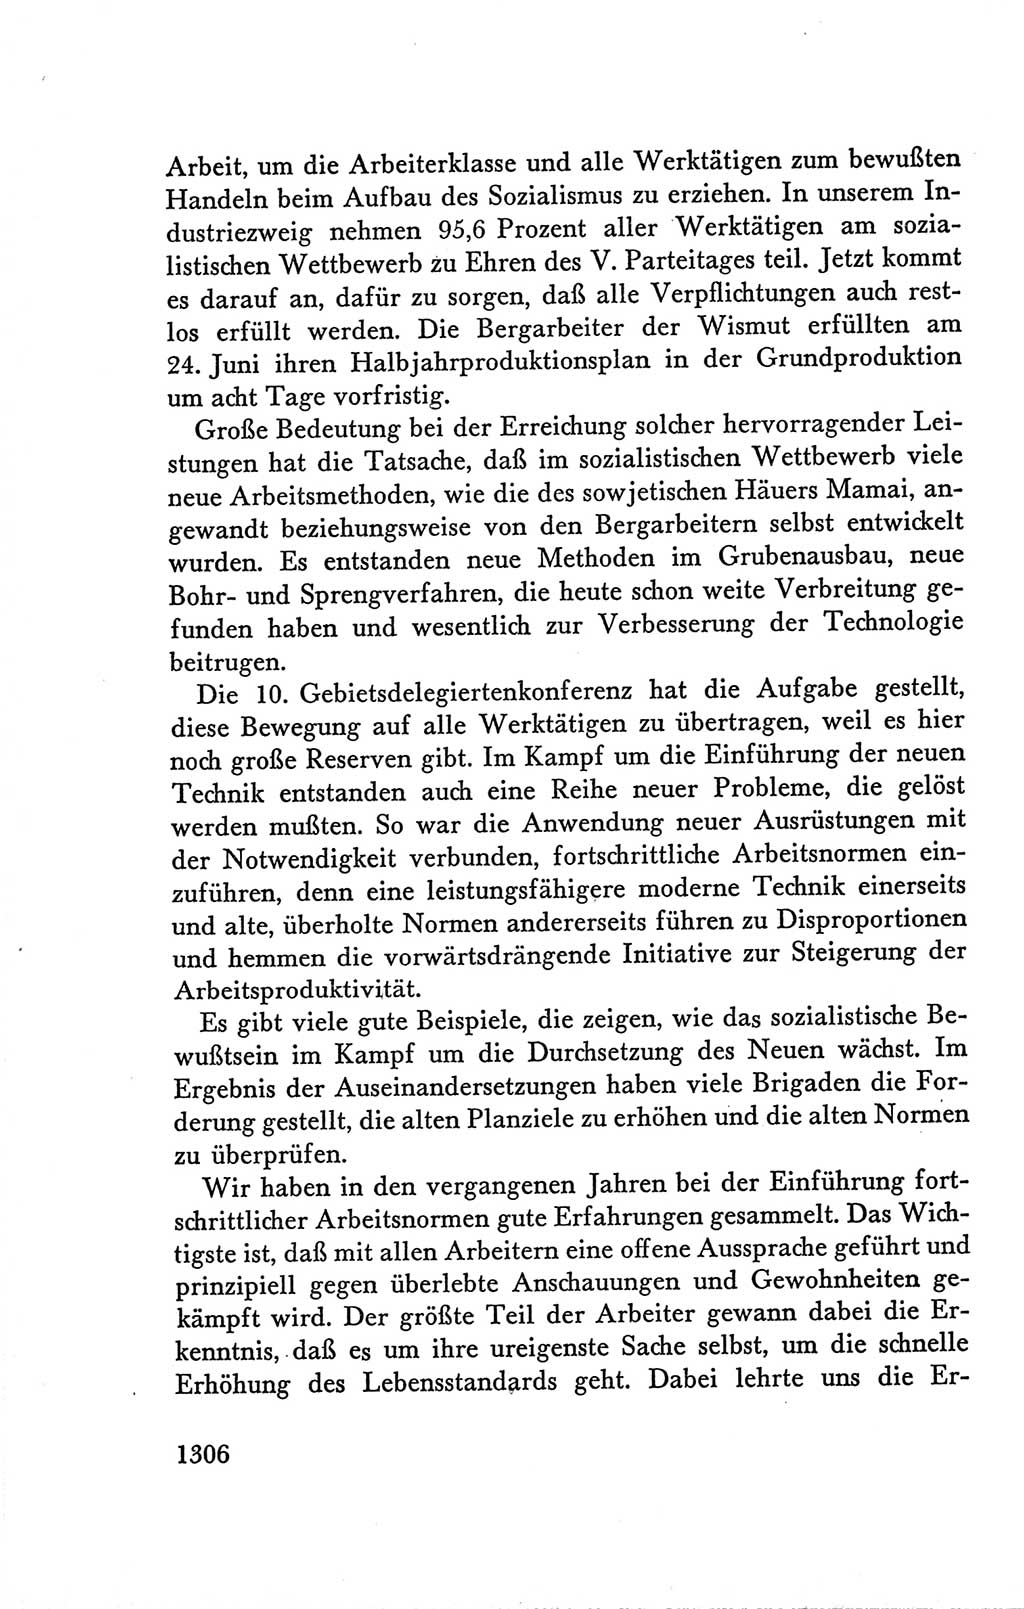 Protokoll der Verhandlungen des Ⅴ. Parteitages der Sozialistischen Einheitspartei Deutschlands (SED) [Deutsche Demokratische Republik (DDR)] 1958, Seite 1306